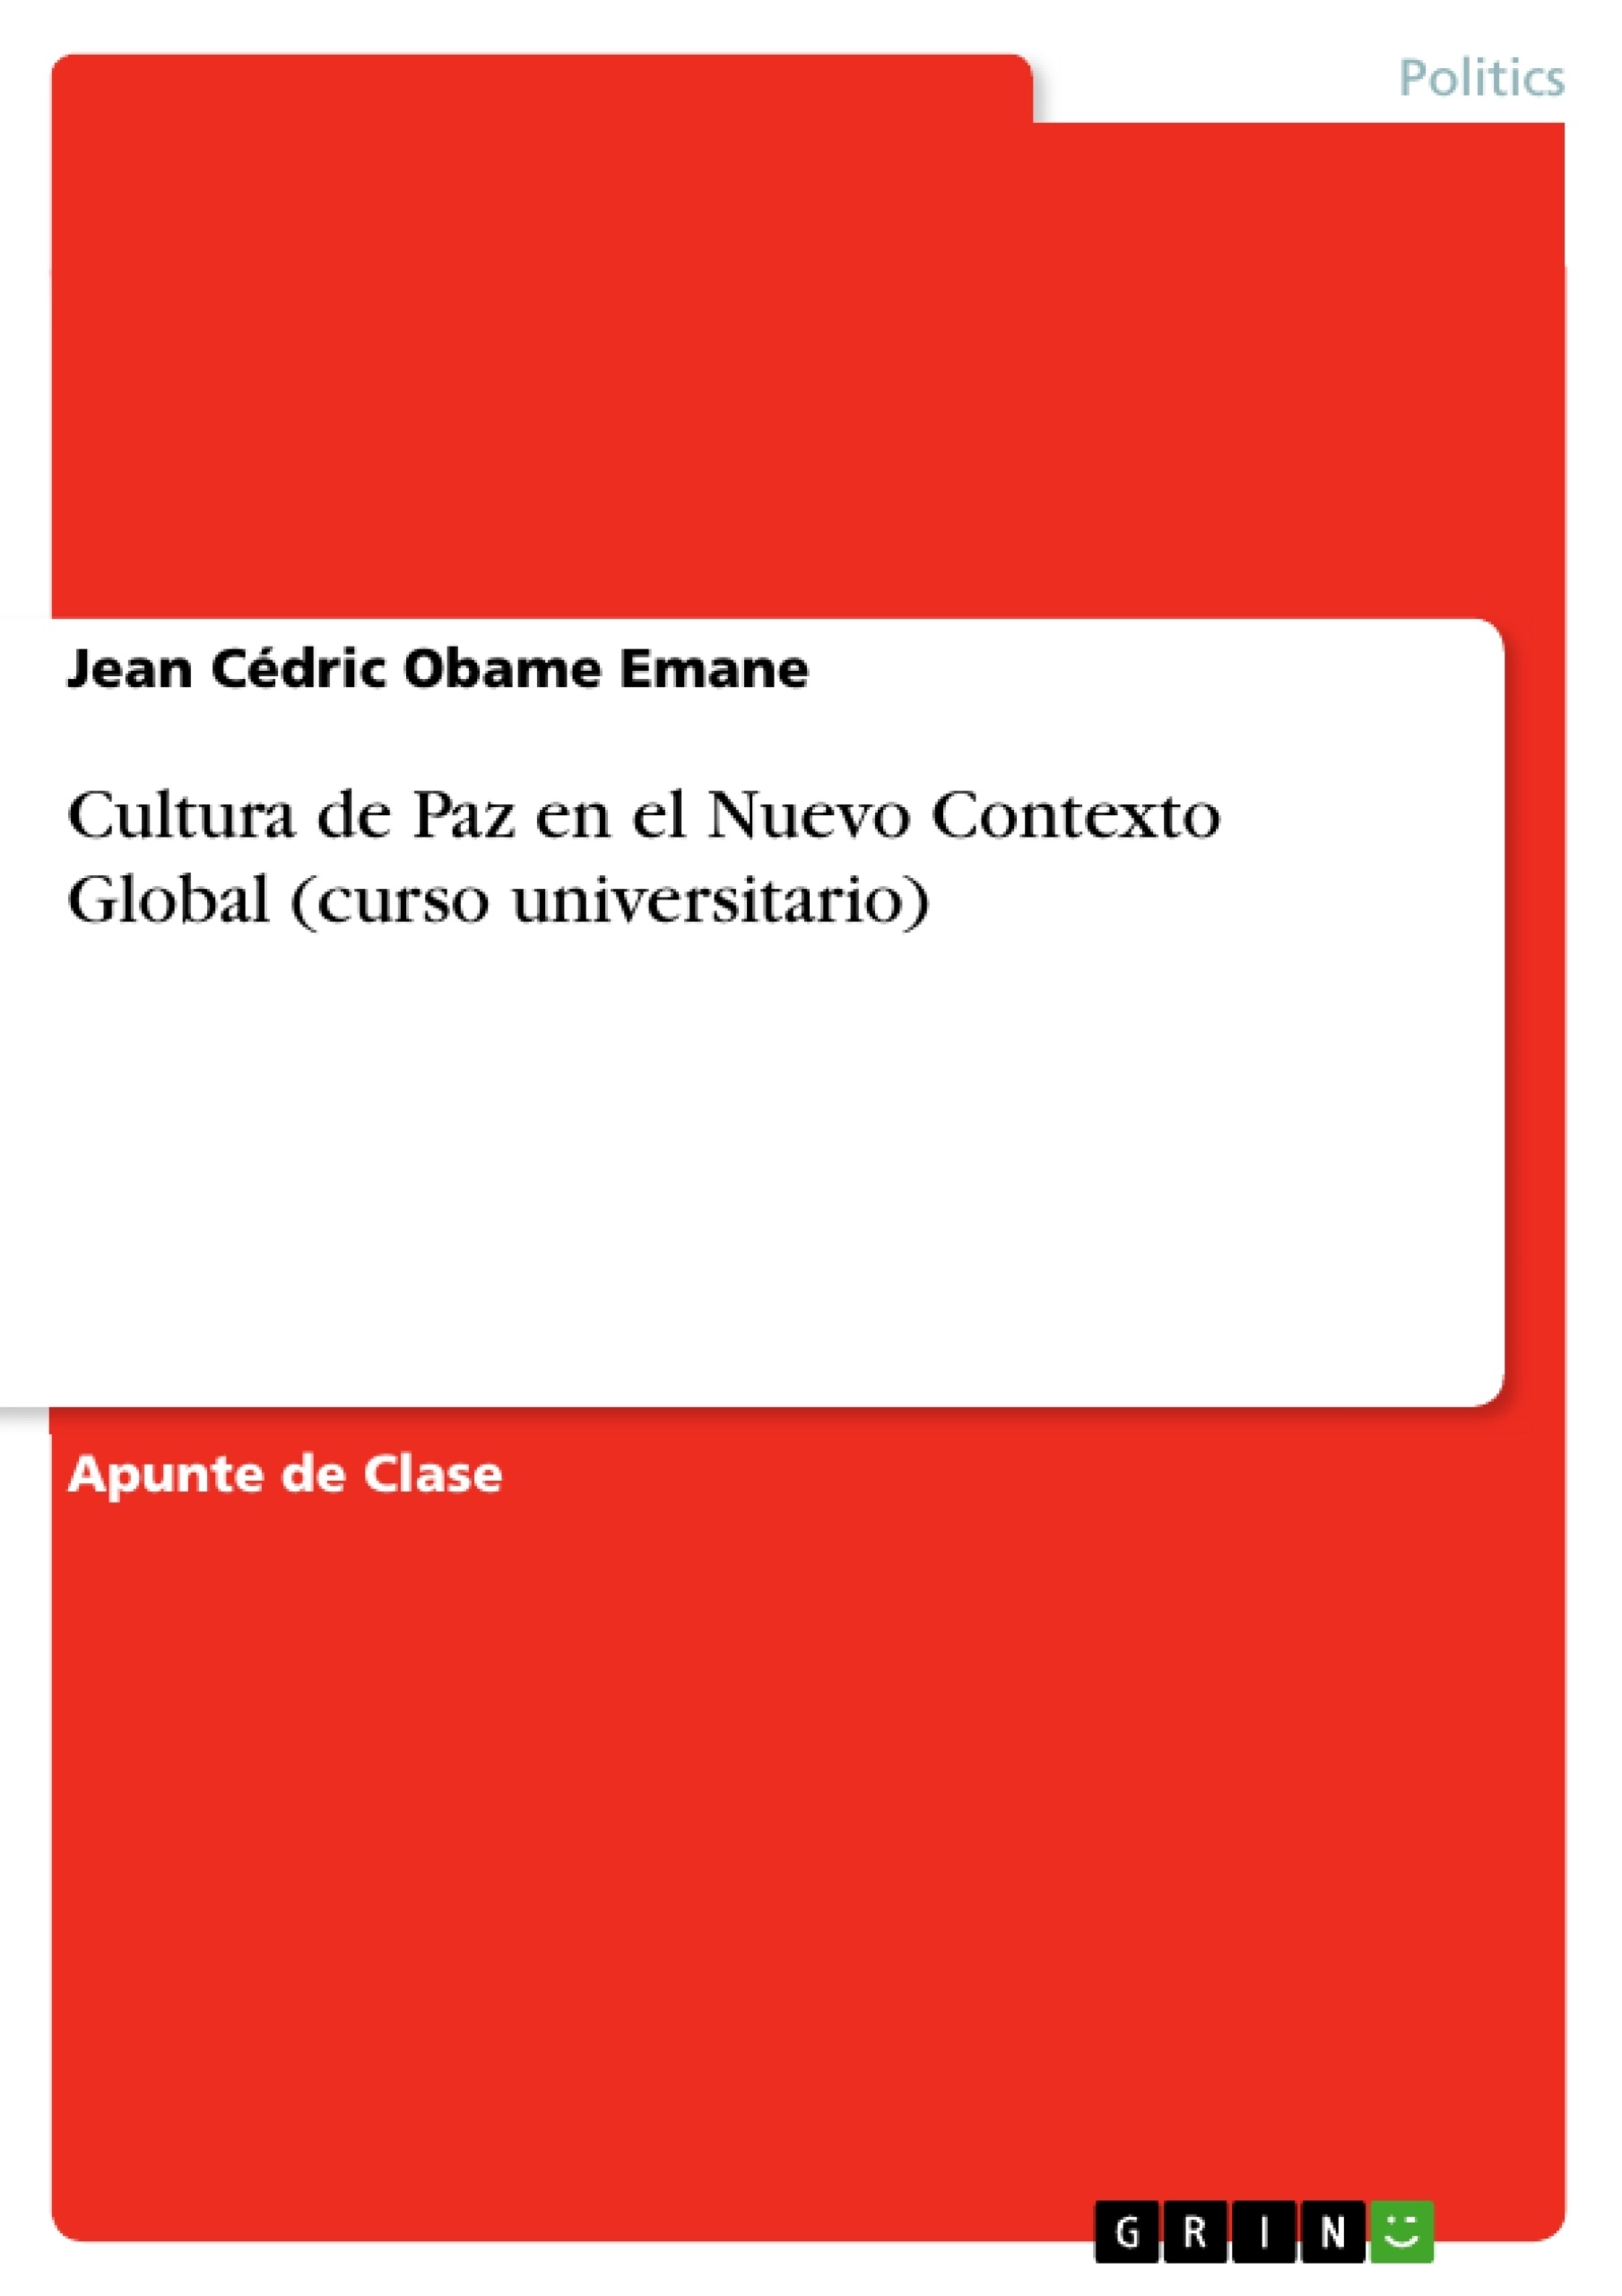 Título: Cultura de Paz en el Nuevo Contexto Global (curso universitario)